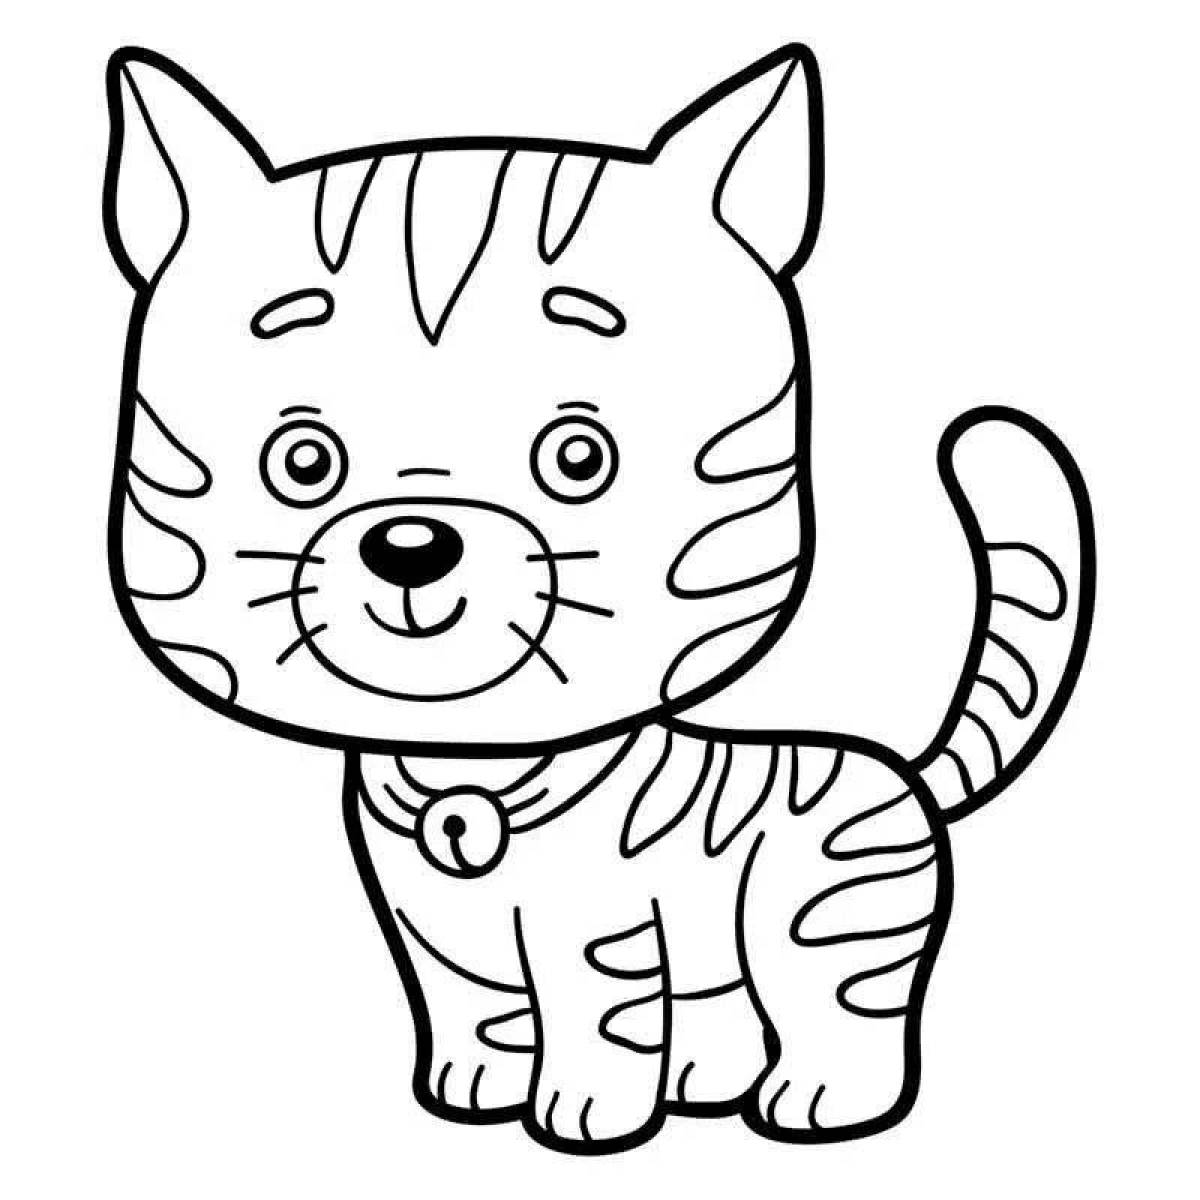 Boobu cat funny coloring book